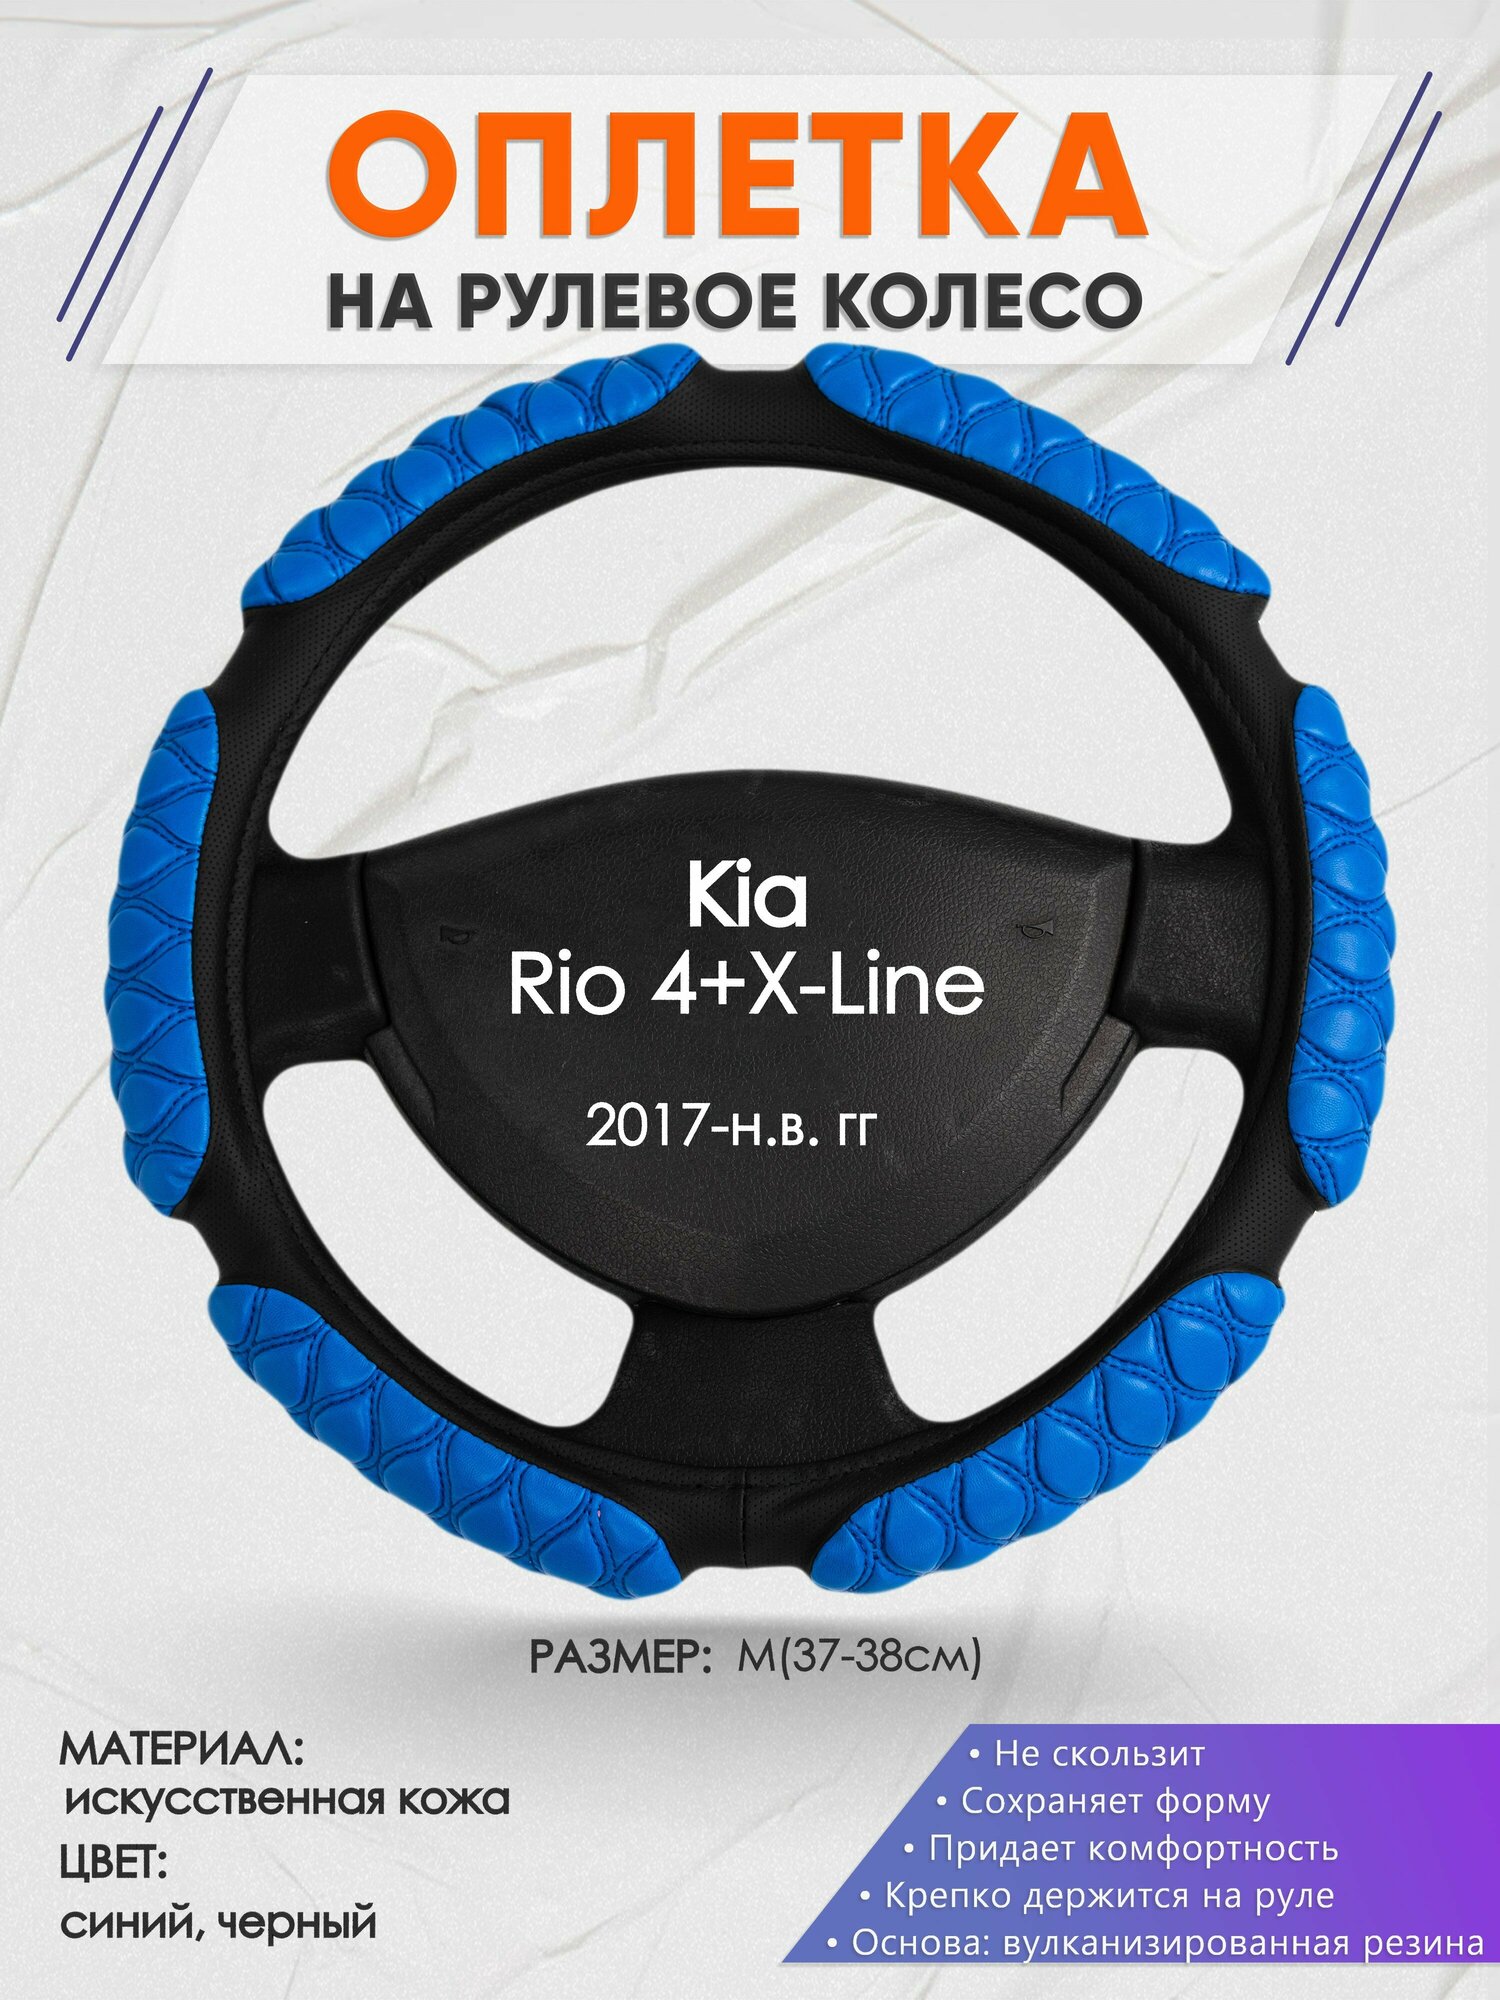 Оплетка на руль для Kia Rio 4+X-Line(Киа Рио 4 / Икс Лайн) 2017-н. в, M(37-38см), Искусственная кожа 02